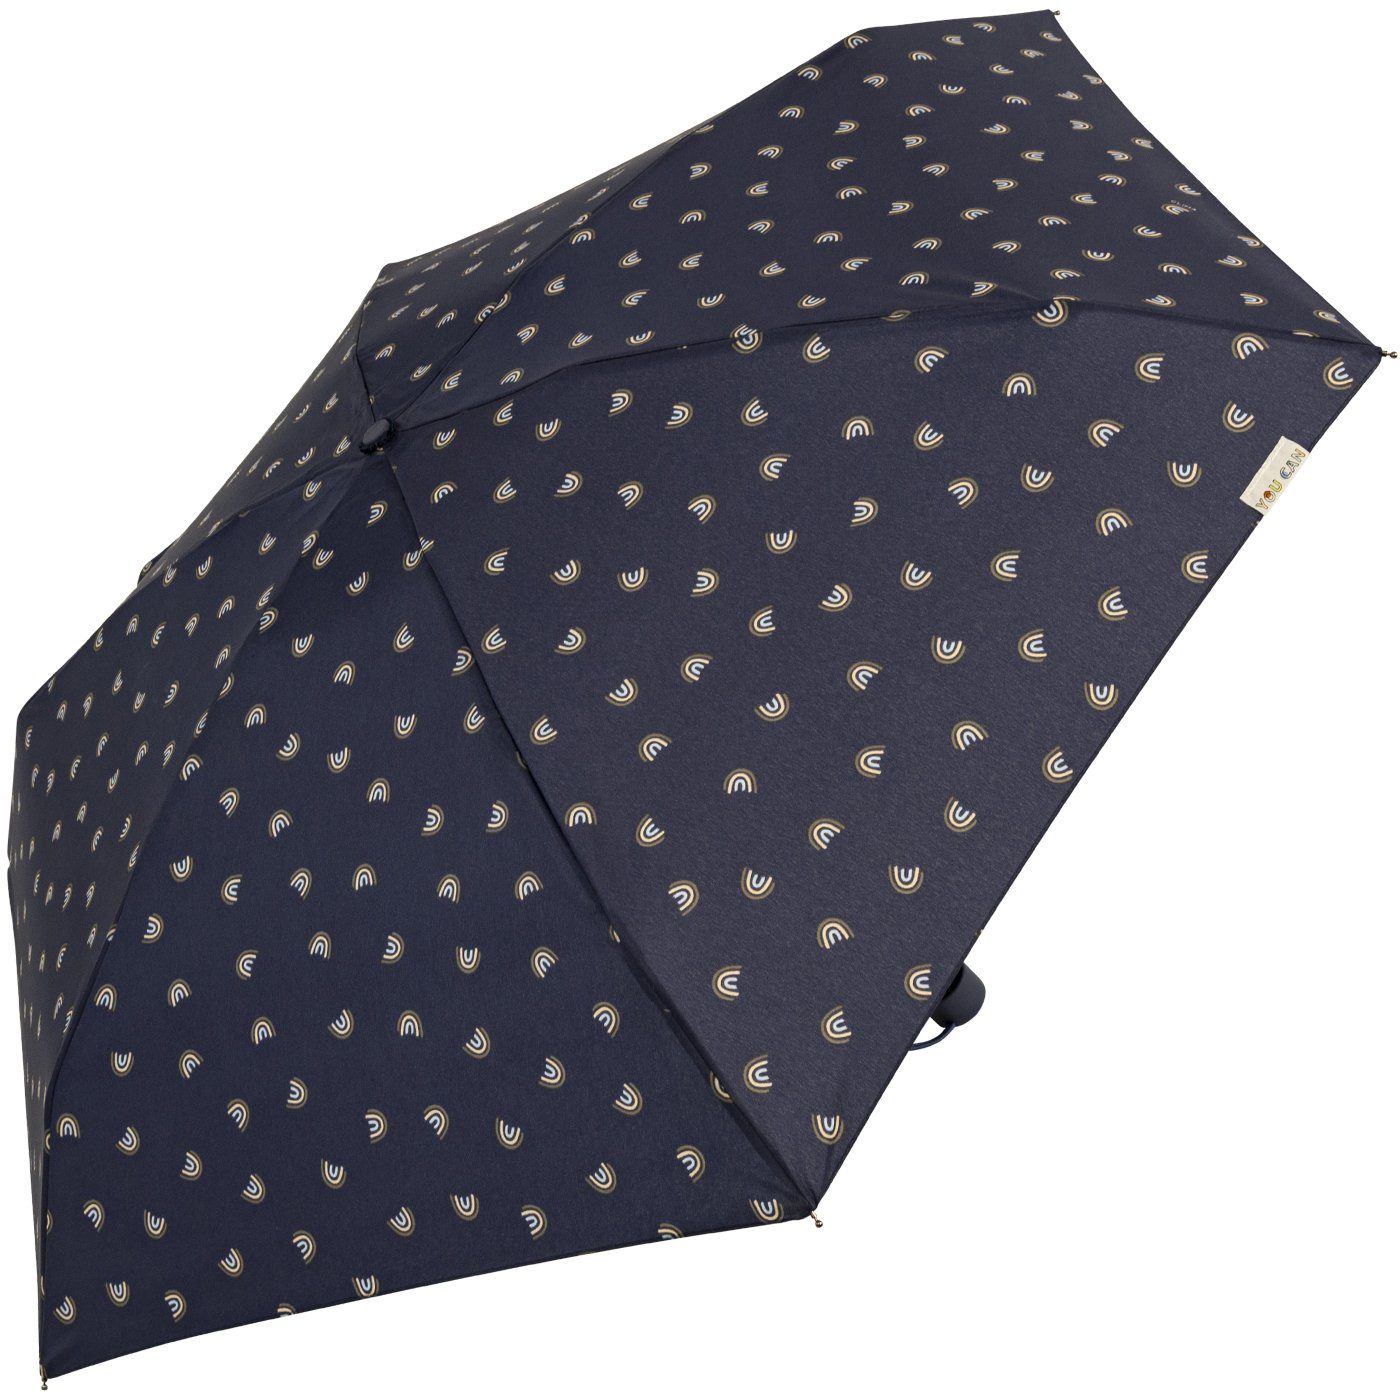 bisetti Taschenregenschirm Damen-Regenschirm, klein, Handöffner, mit kompakt, Bögen-Motiv gedeckte mit stabil, Farben - navy